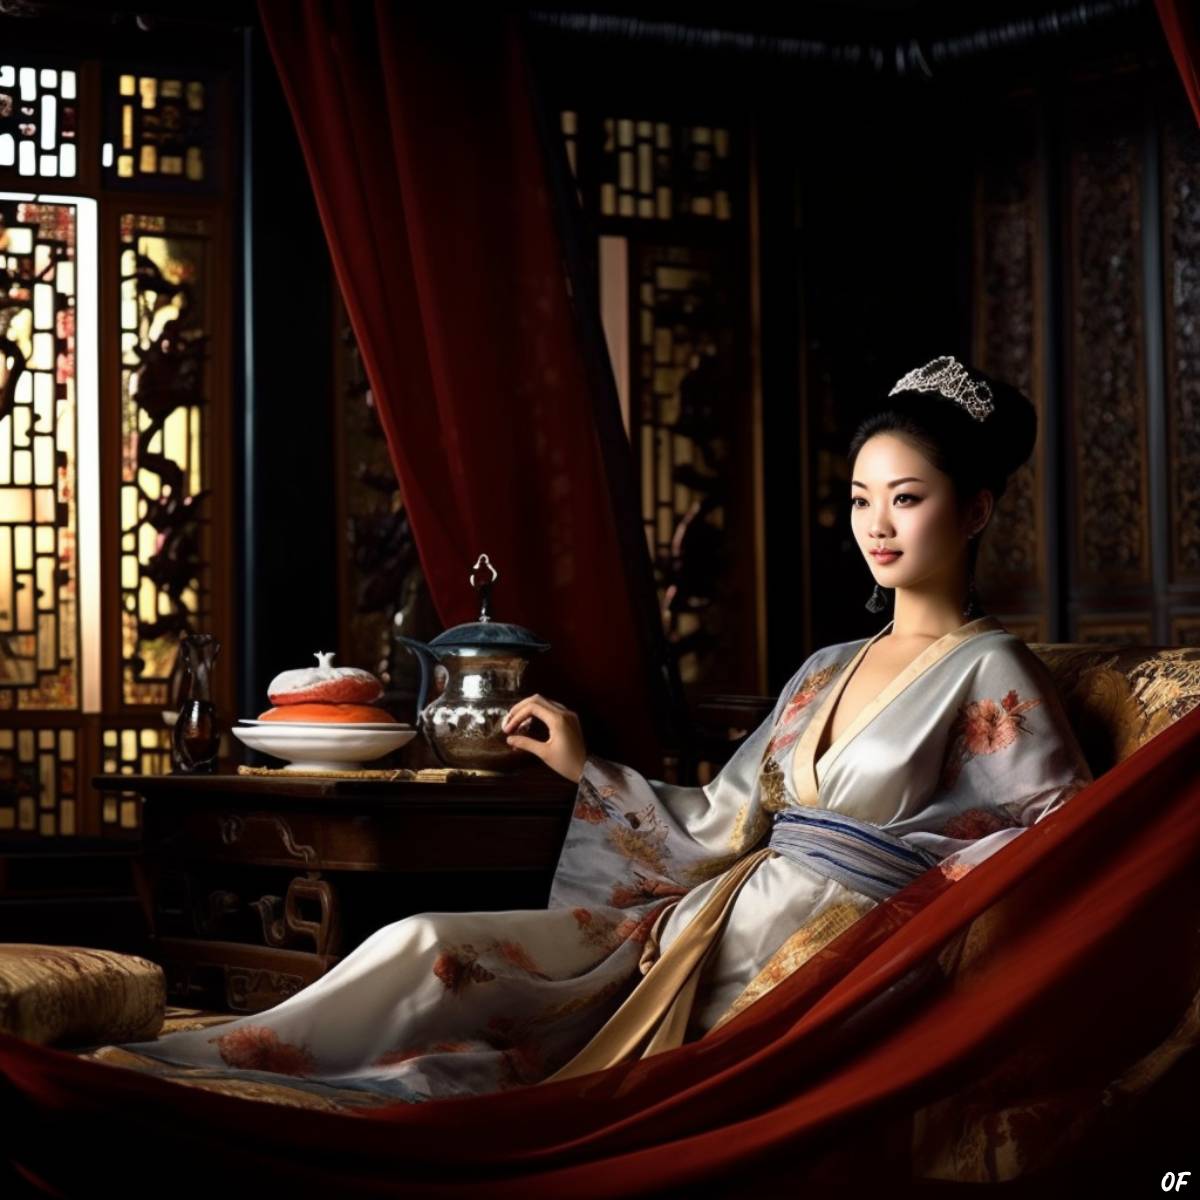 Xin Zhui reclining in opulence.